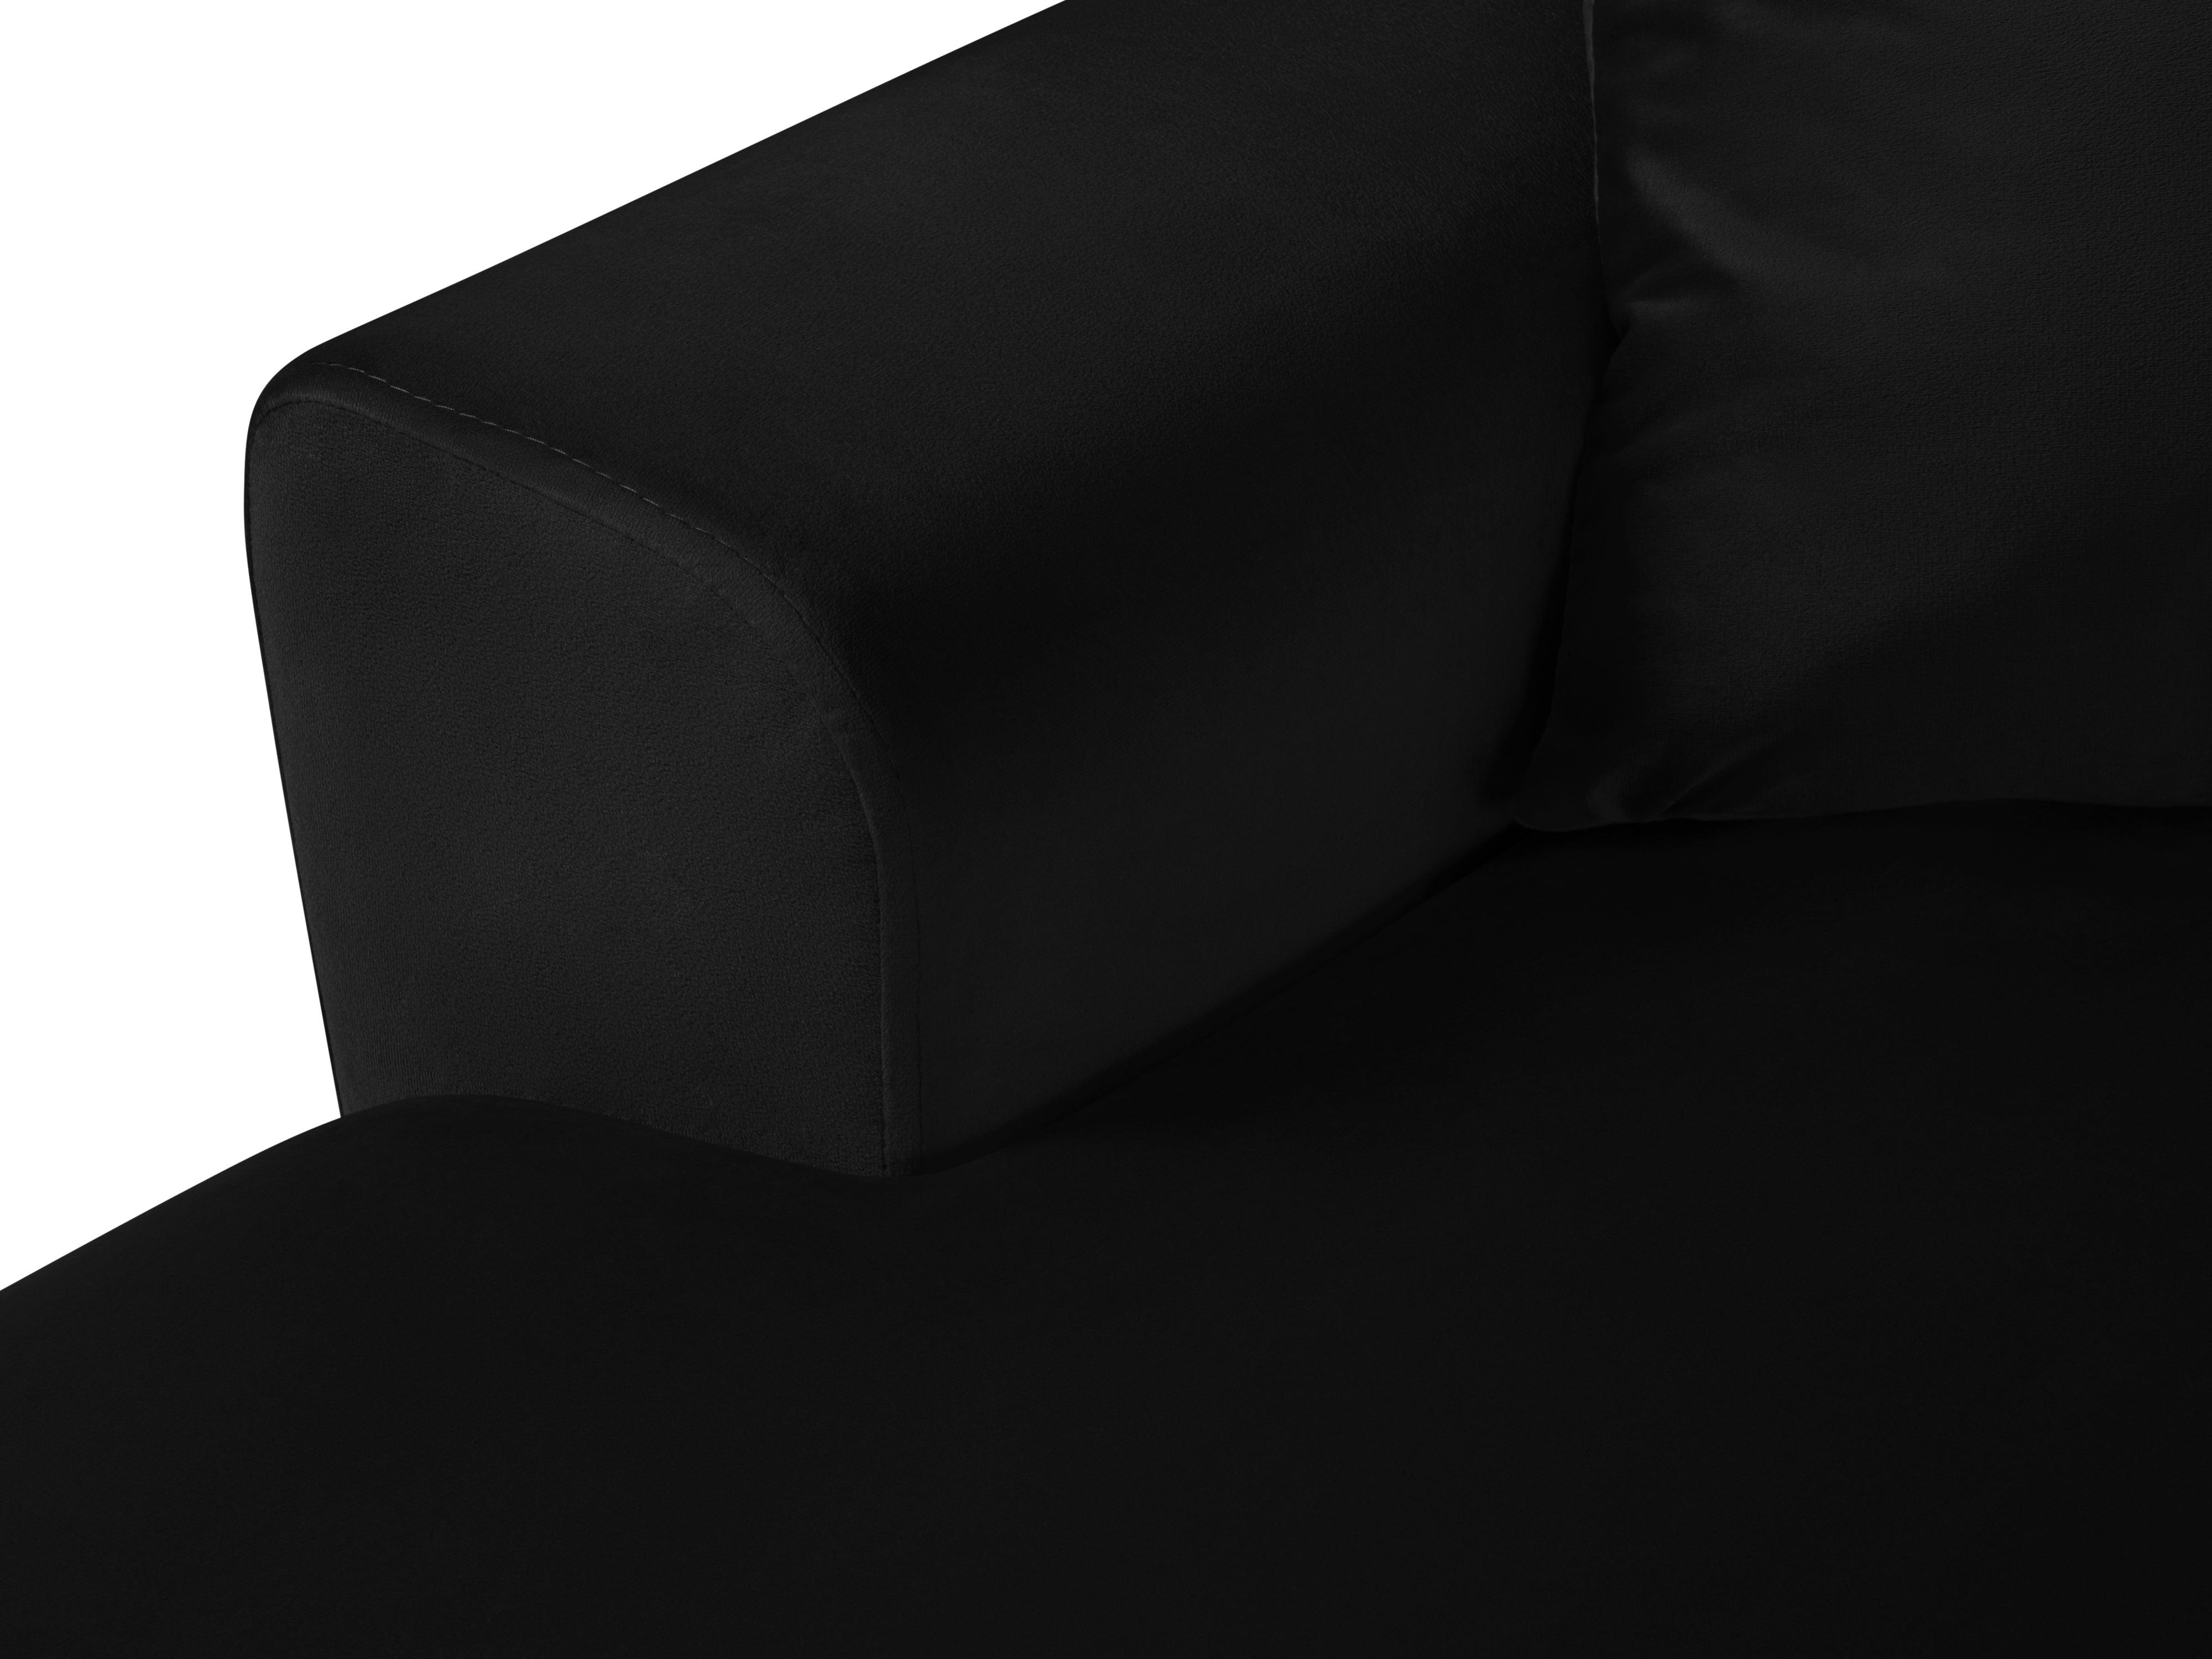 Narożnik prawostronny aksamitny panoramiczny z funkcją spania KYOTO czarny z czarną podstawą Cosmopolitan Design    Eye on Design